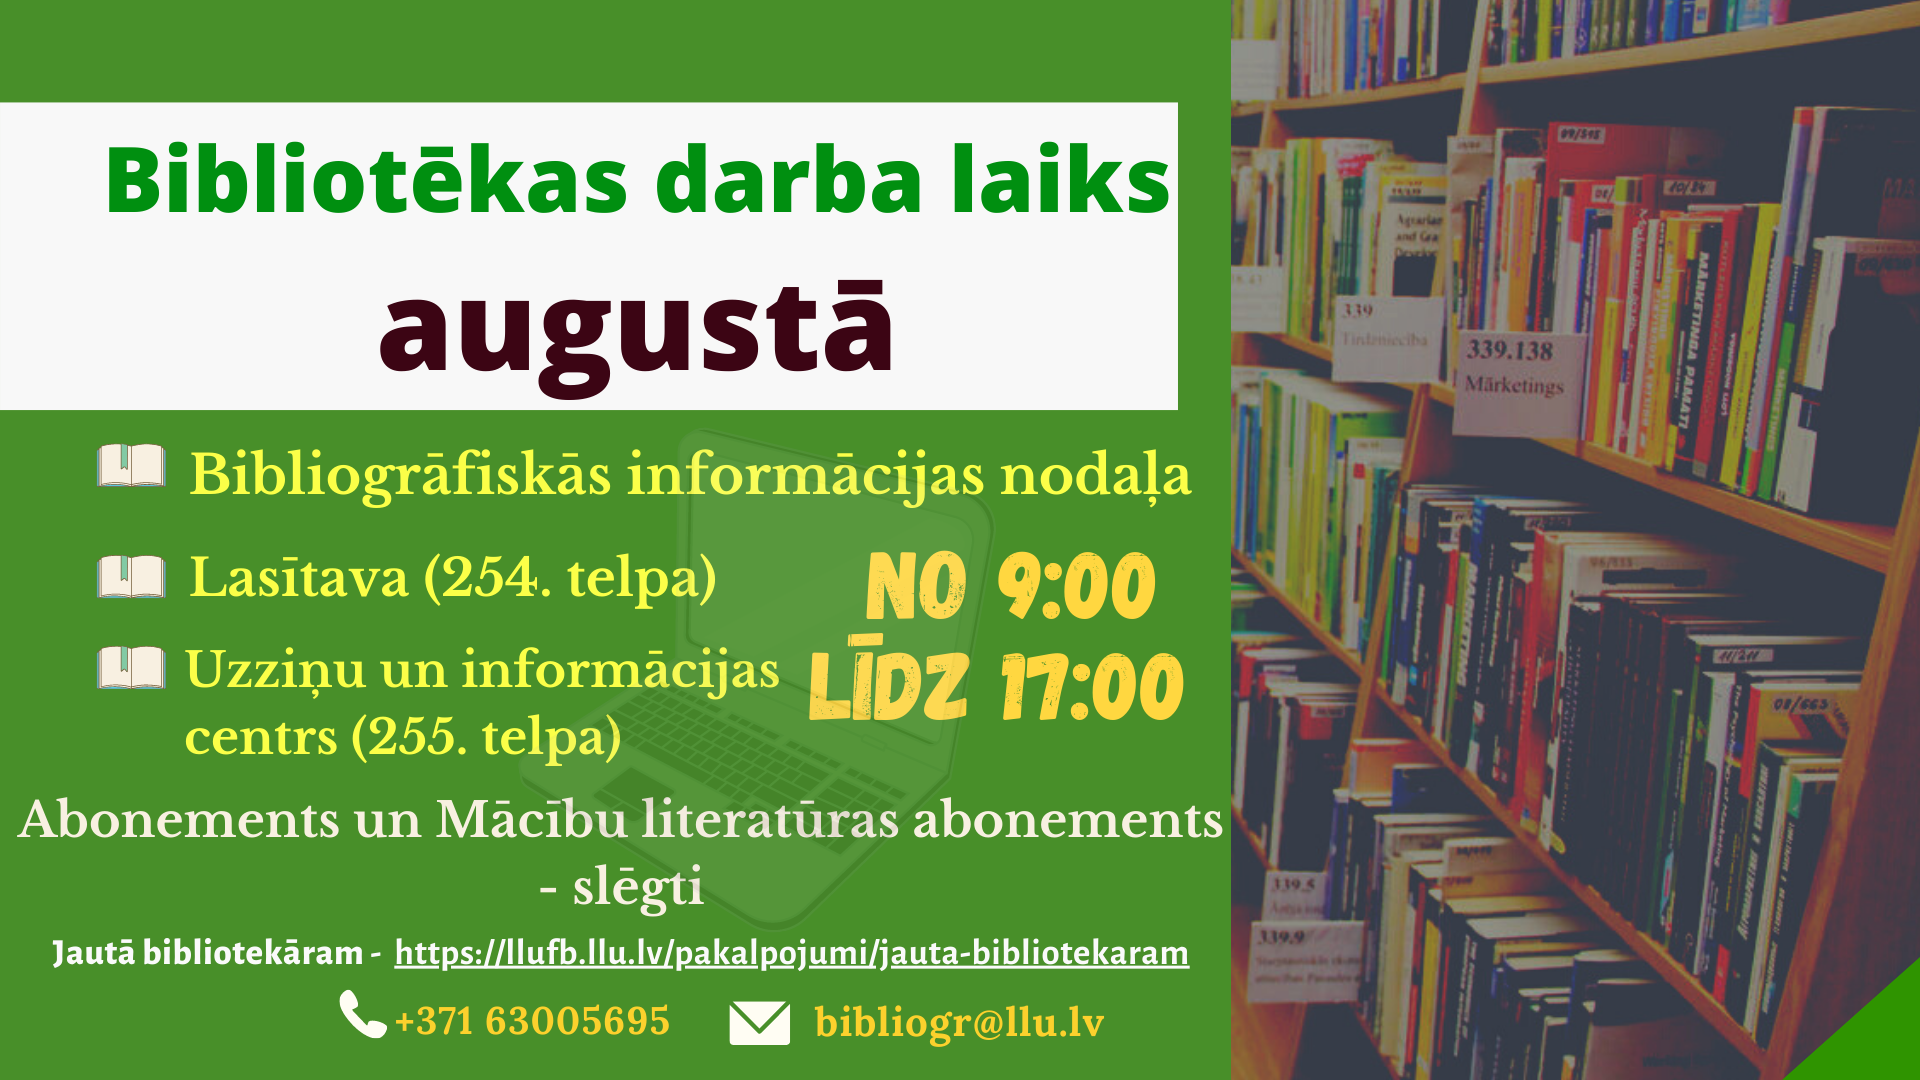 Latvijas Lauksaimniecības universitātes Fundamentālā bibliotēka augustā atvērta no 9:00 līdz 17:00. Abonementi ir slēgti.